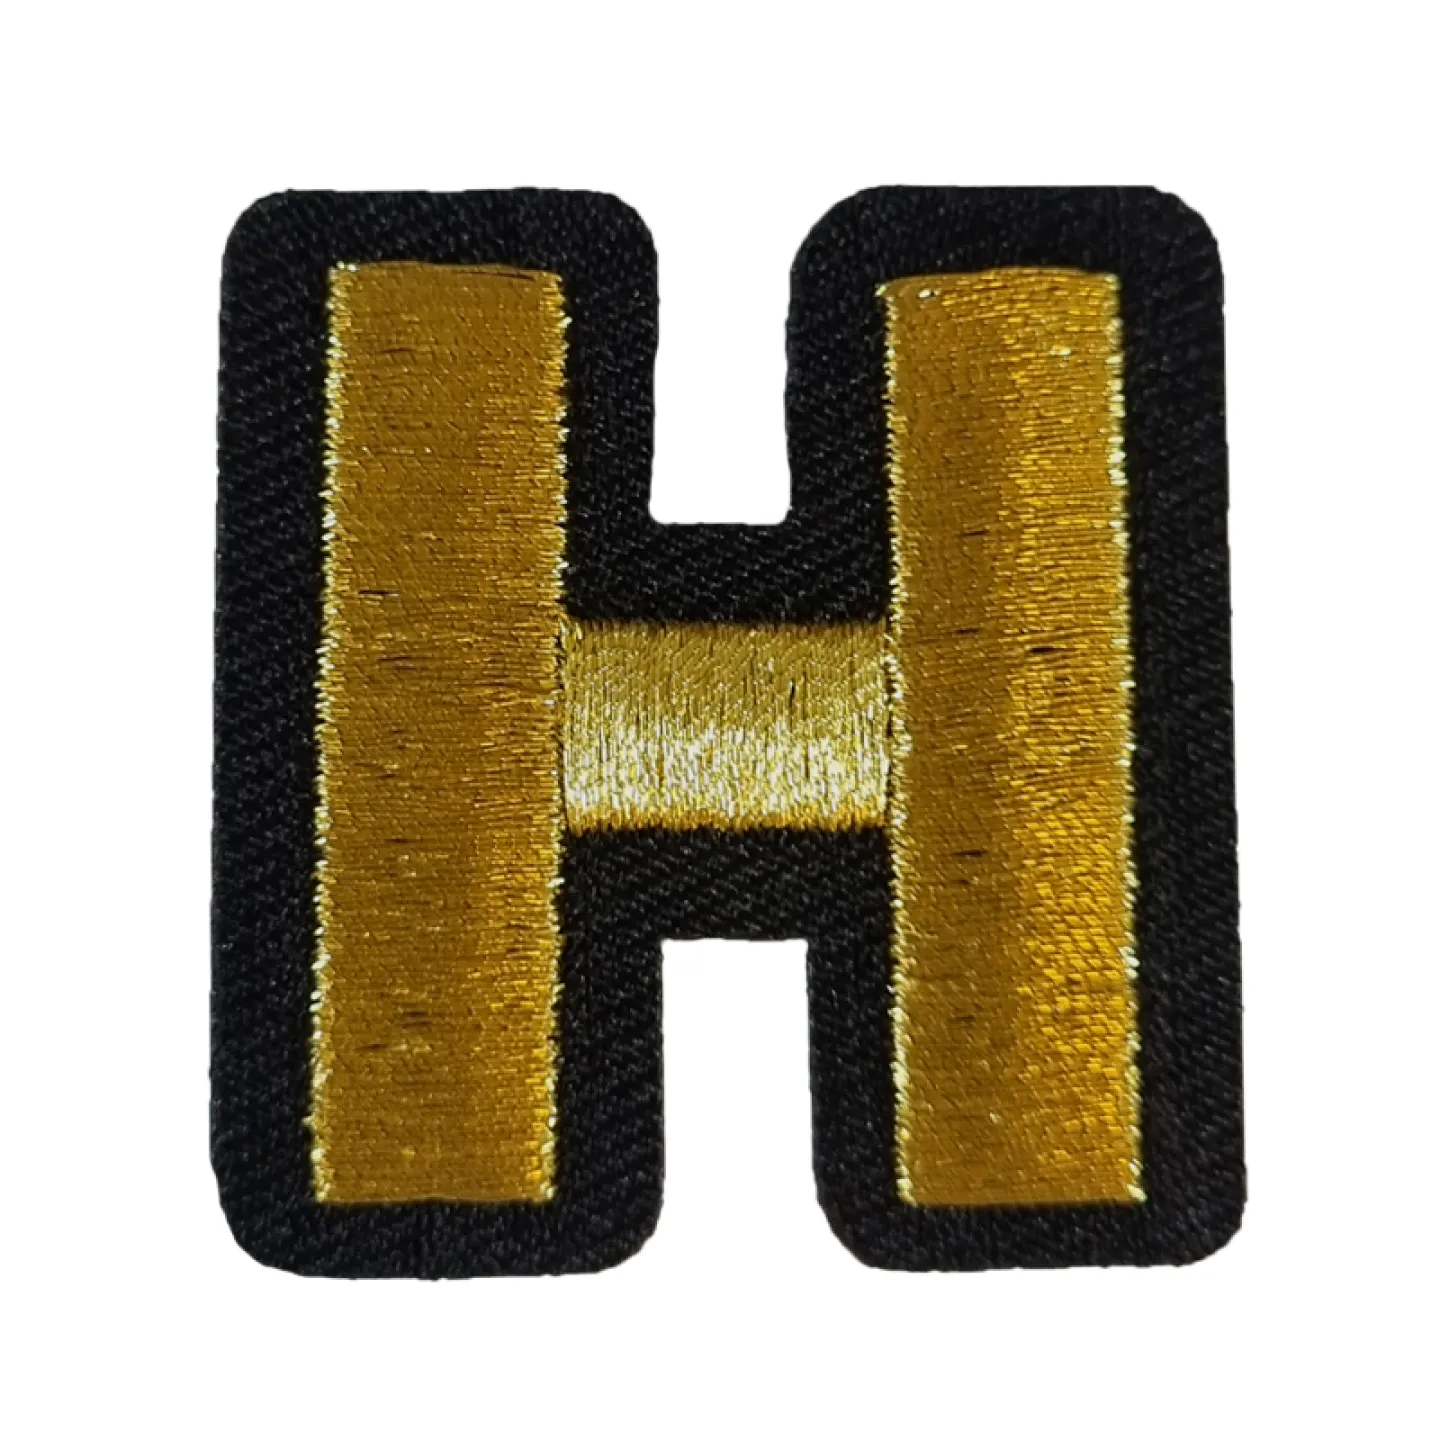 Kielegat embleem Gouden letter H.